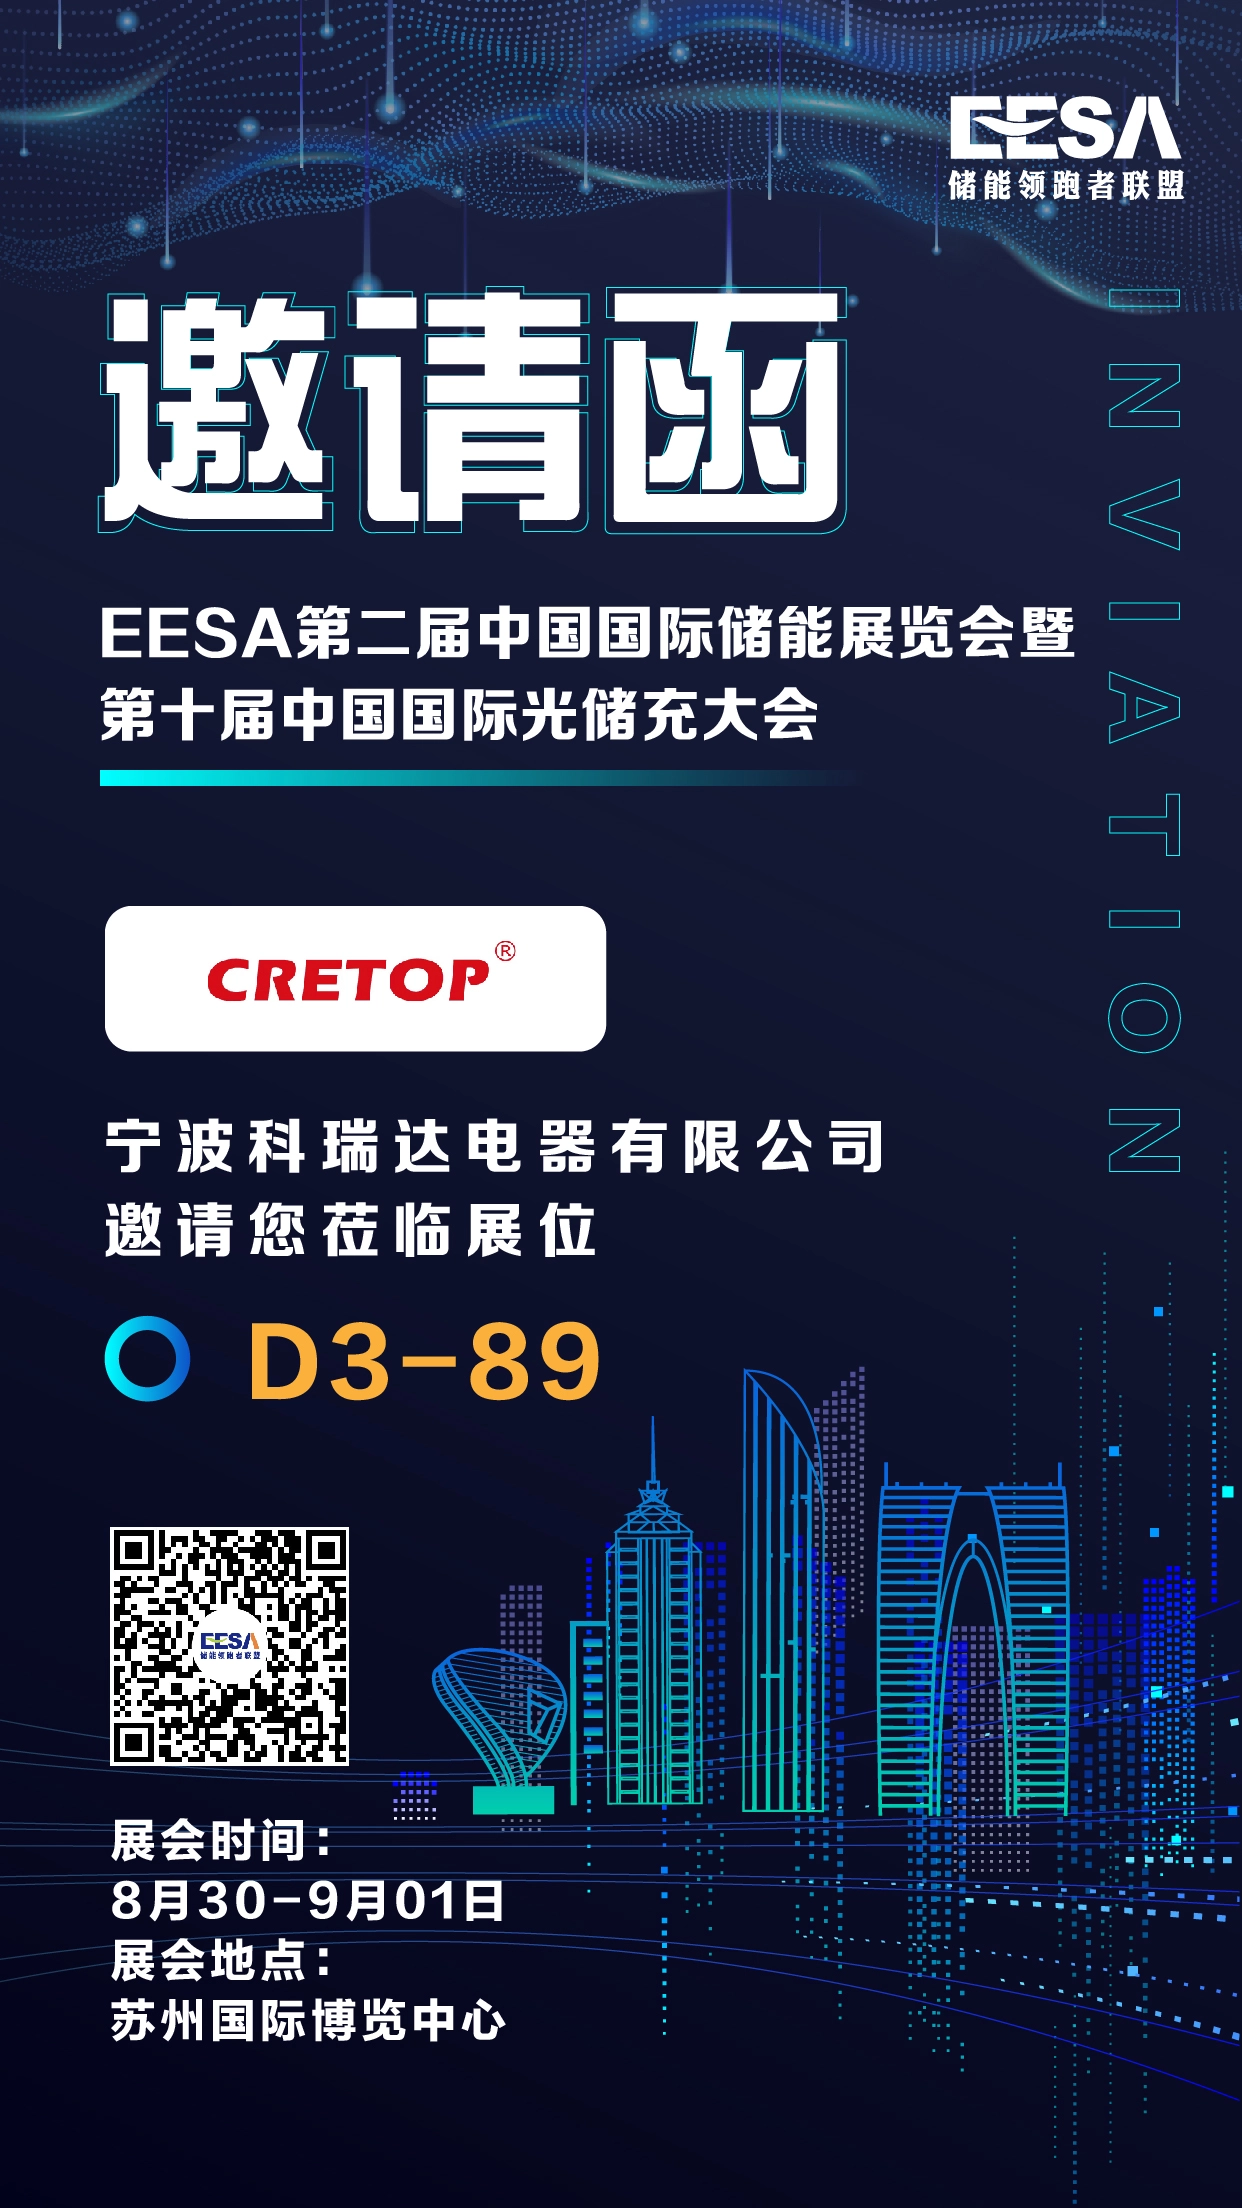 Uitnodiging van Suzhou EESA